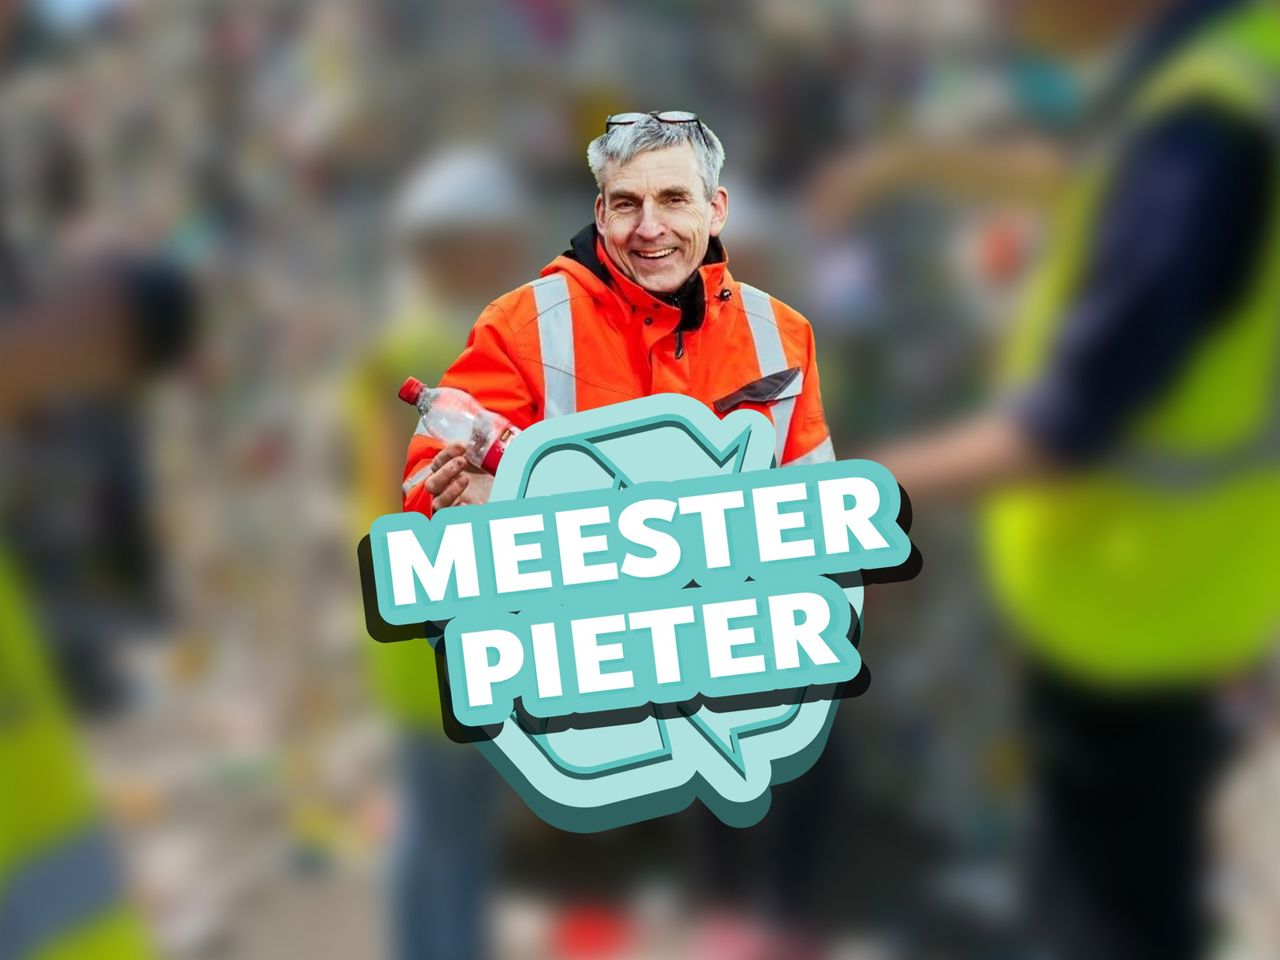 Meester Pieter